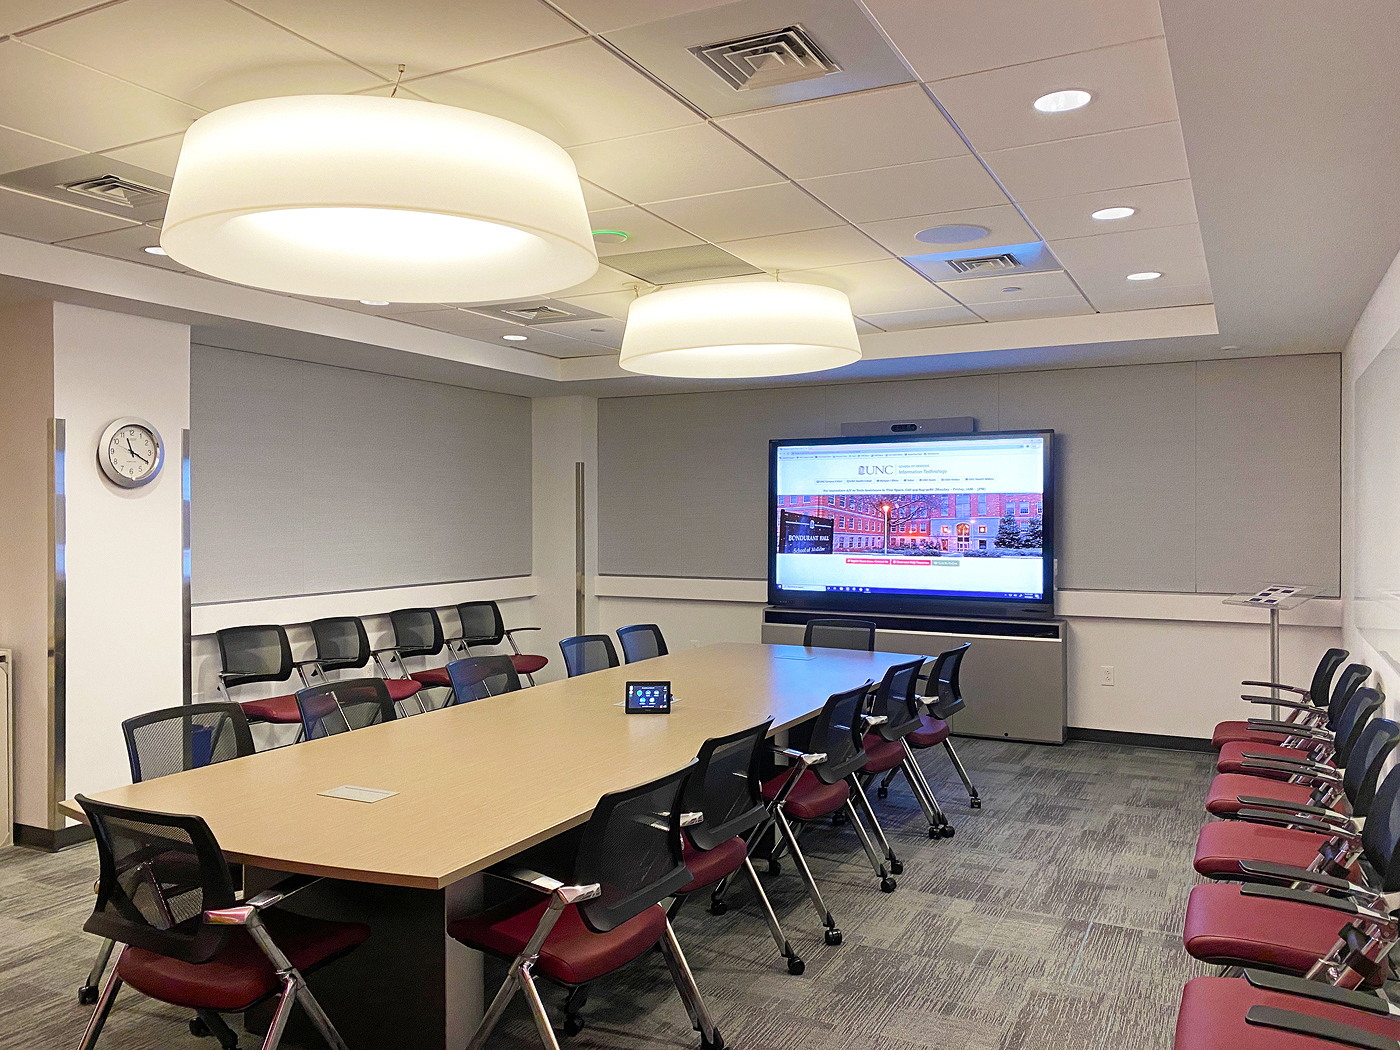 Deux nouvelles salles de conférence sont reliées au centre de formation via l'AV sur IP NAV, offrant plus d'espaces de réunion pour le travail collaboratif. Reproduction autorisée par Heidi Grassley de ClarkPowell.